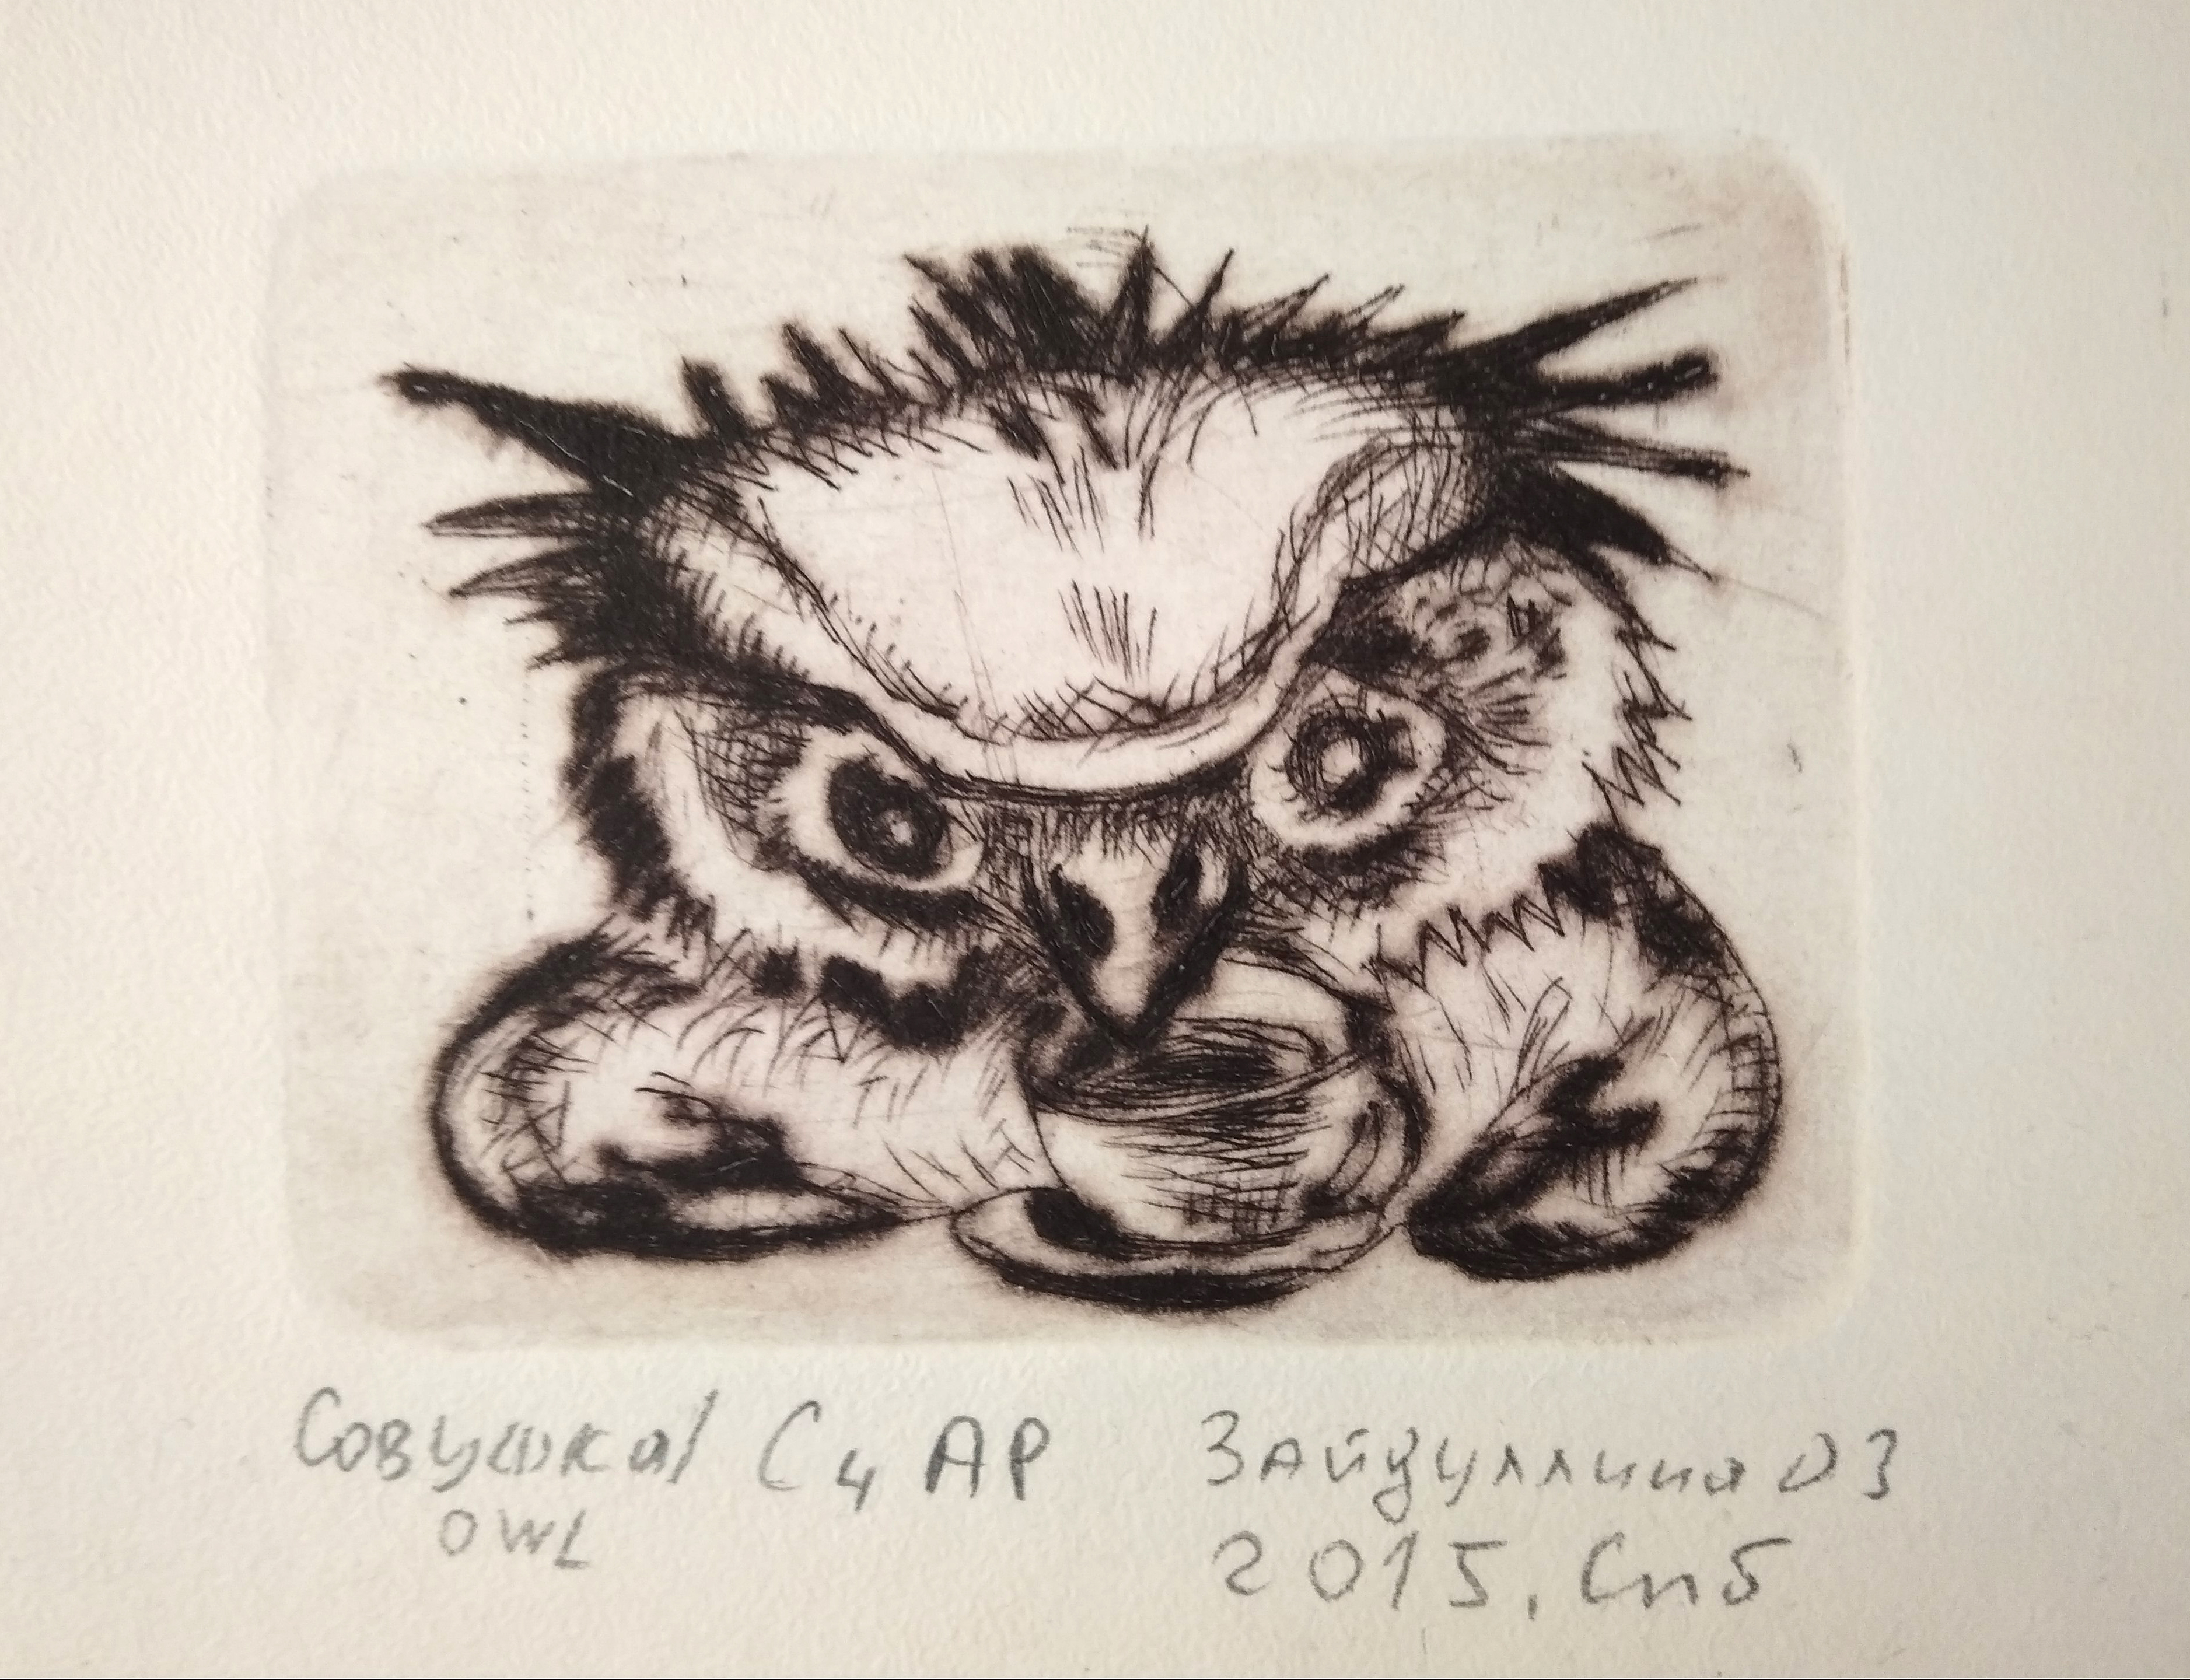 Иллюстрация Сонная сова с кофе. Офорт. Печатная графика в стиле